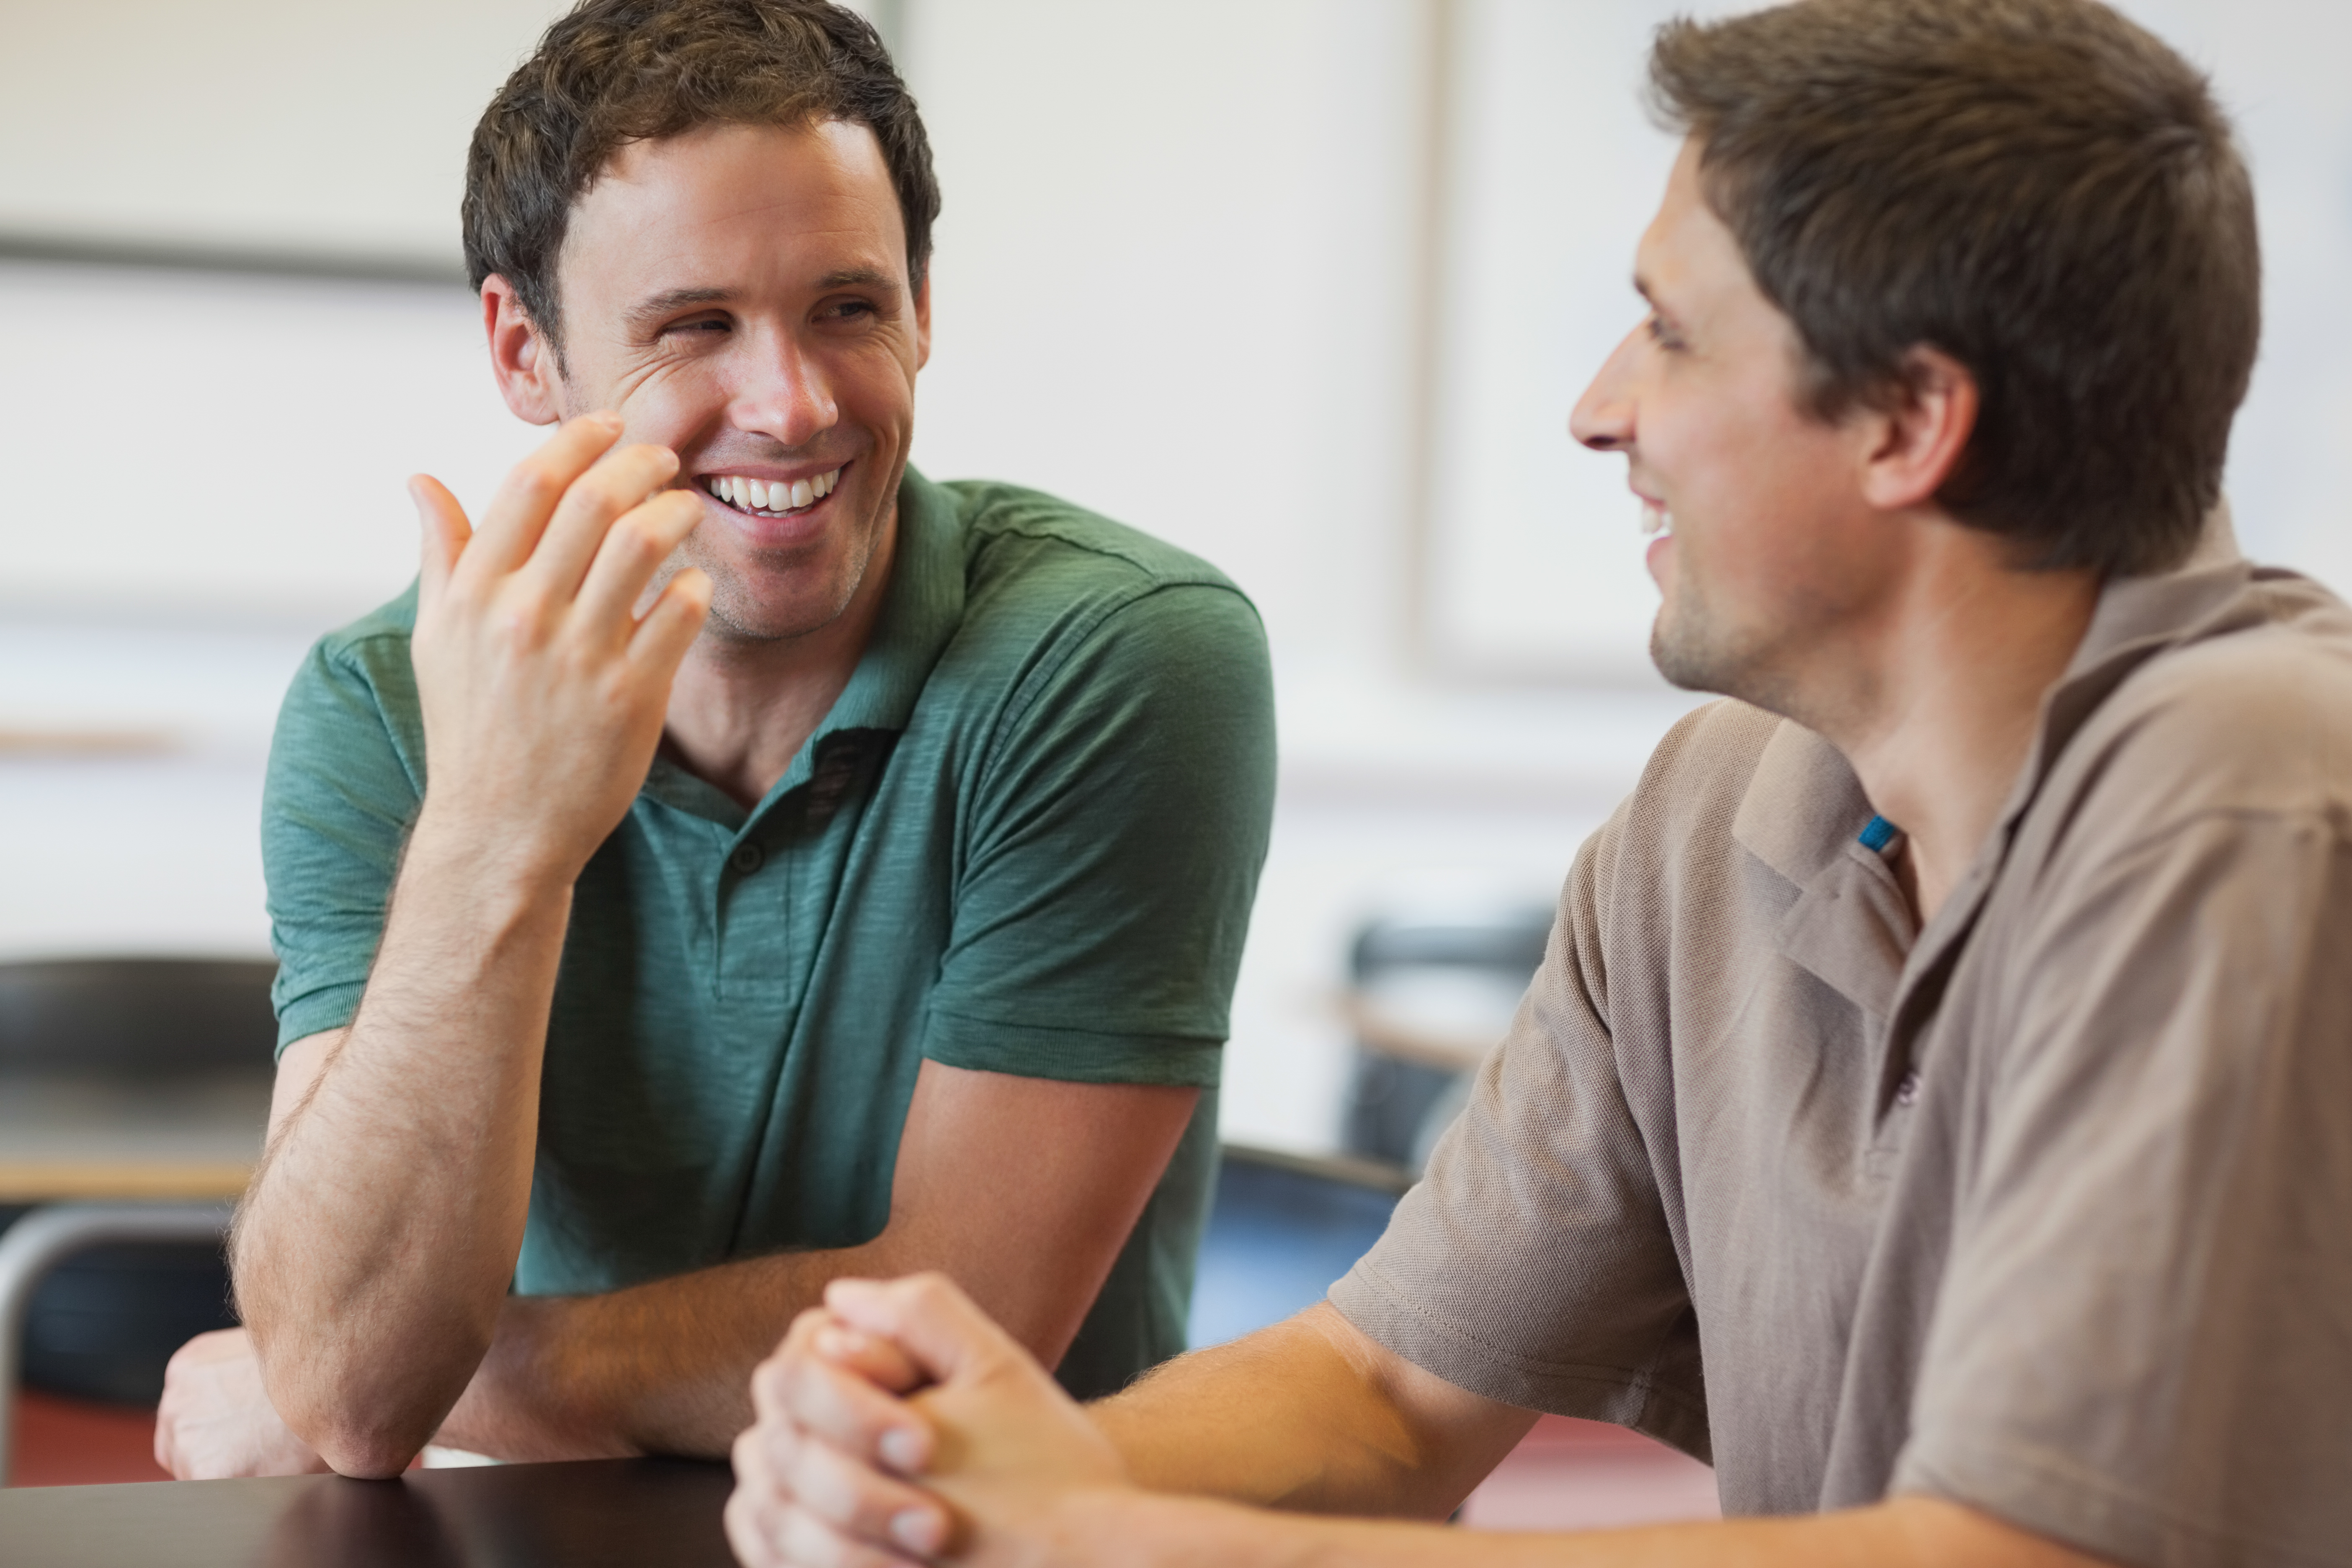 Two men talking | Source: Shutterstock